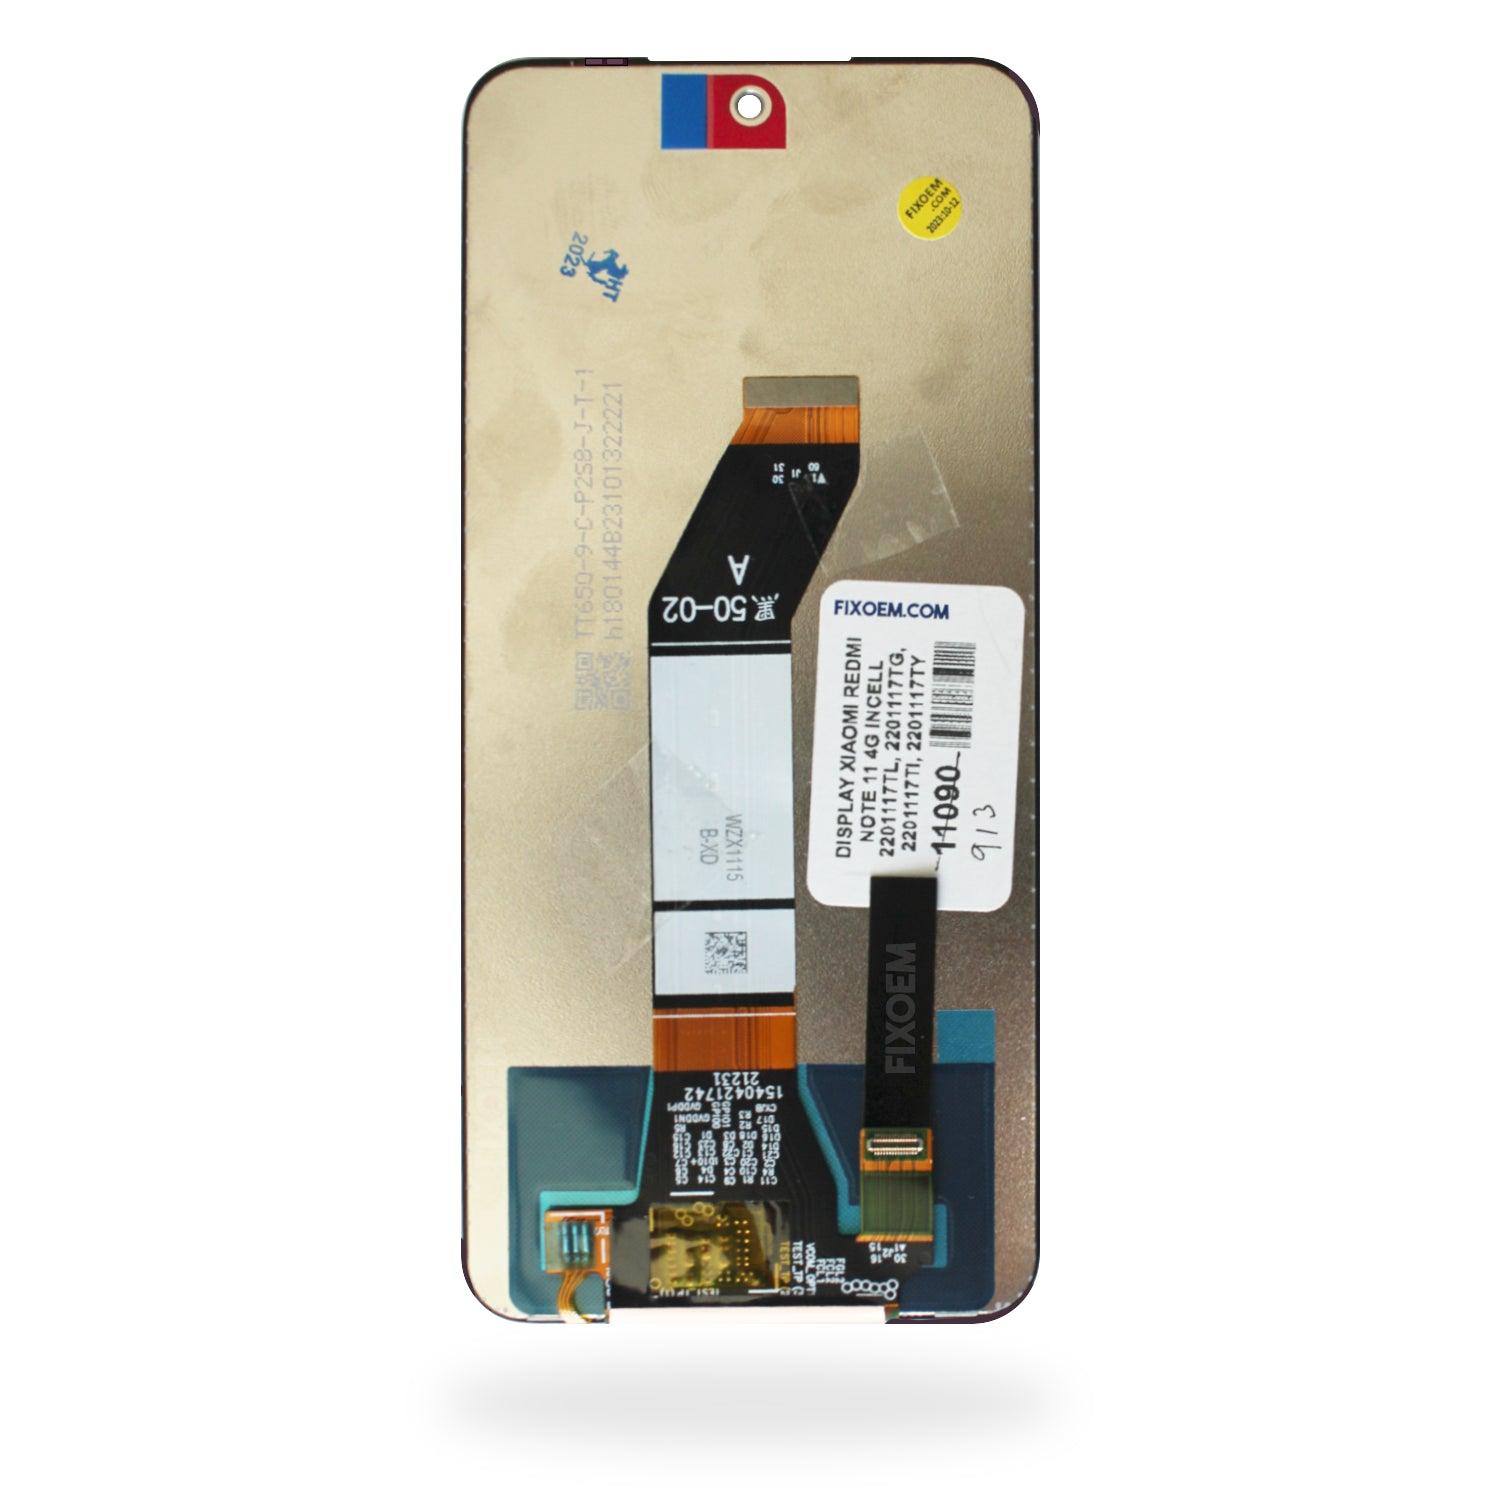 Display Xiaomi Redmi 10 / Redmi 10 Prime 21061119al a solo $ 270.00 Refaccion y puestos celulares, refurbish y microelectronica.- FixOEM